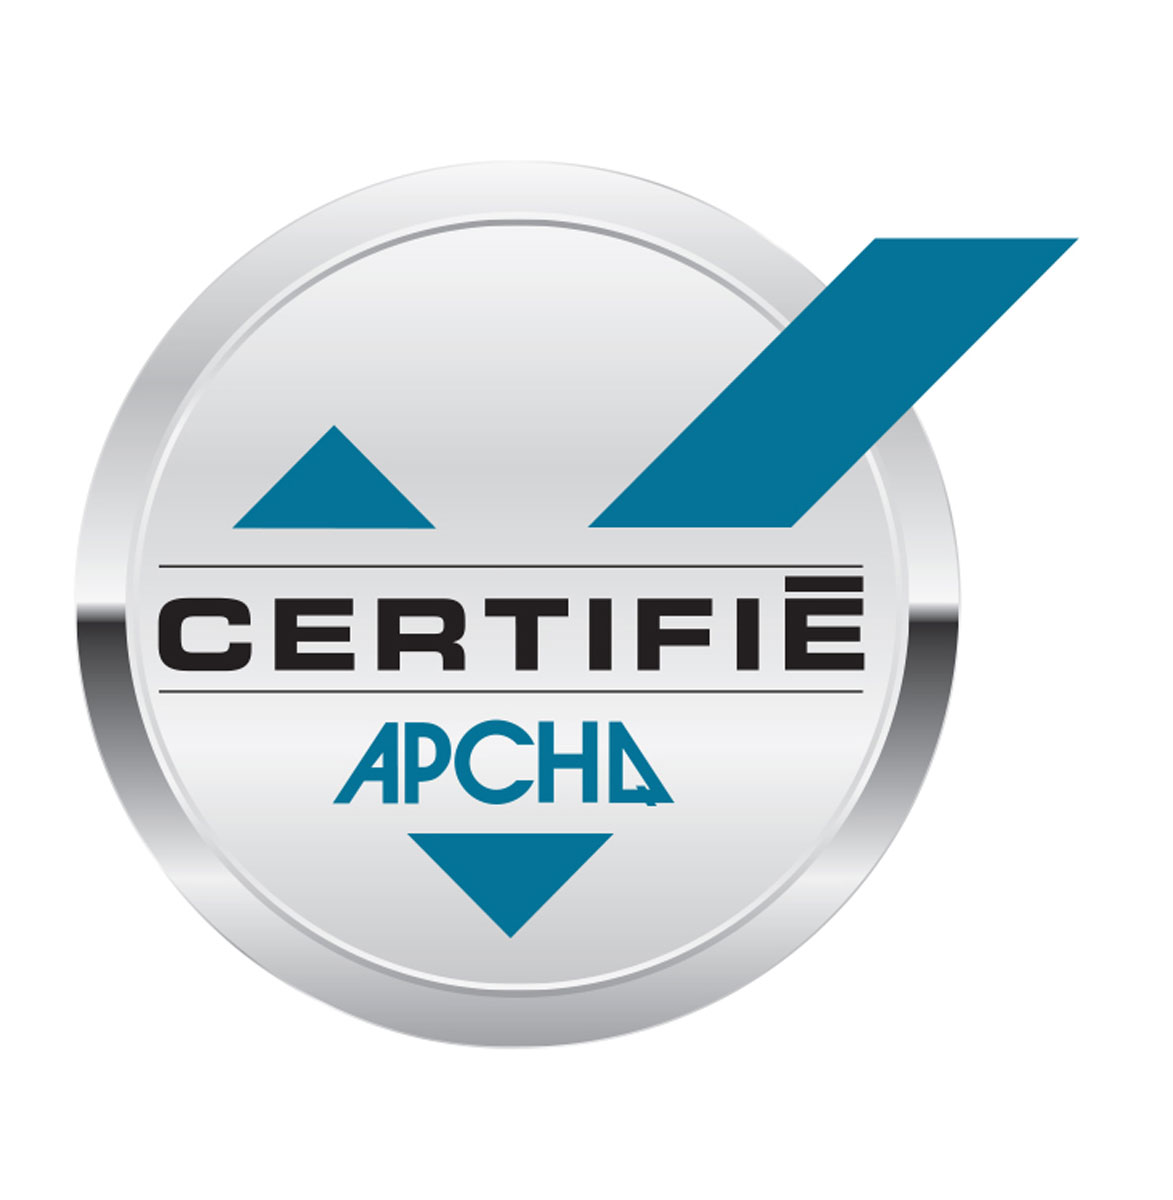 Consultez le document - Choisissez un entrepreneur certifié APCHQ